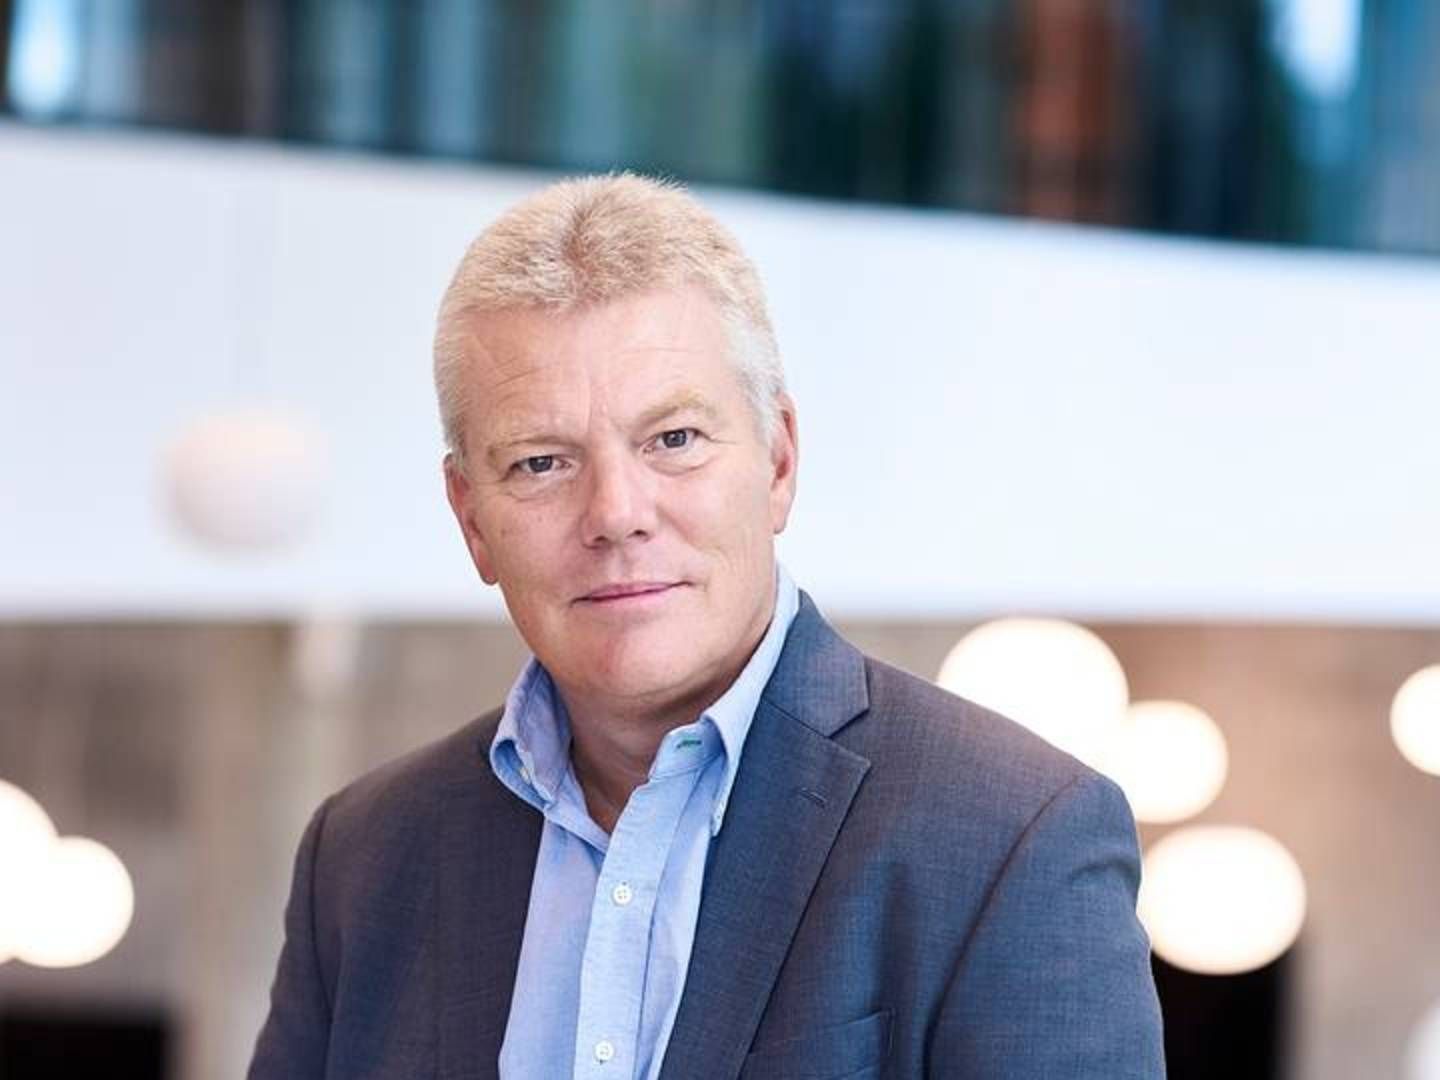 Per Grønborg havde 31. marts sidste arbejdsdag hos SEB, hvor han har været de sidste seks år. Han stopper efter næsten 40 år i den finansielle sektor, men håber at kunne bruge sin erfaring et par dage om ugen i en ny rolle. | Foto: PR/SEB